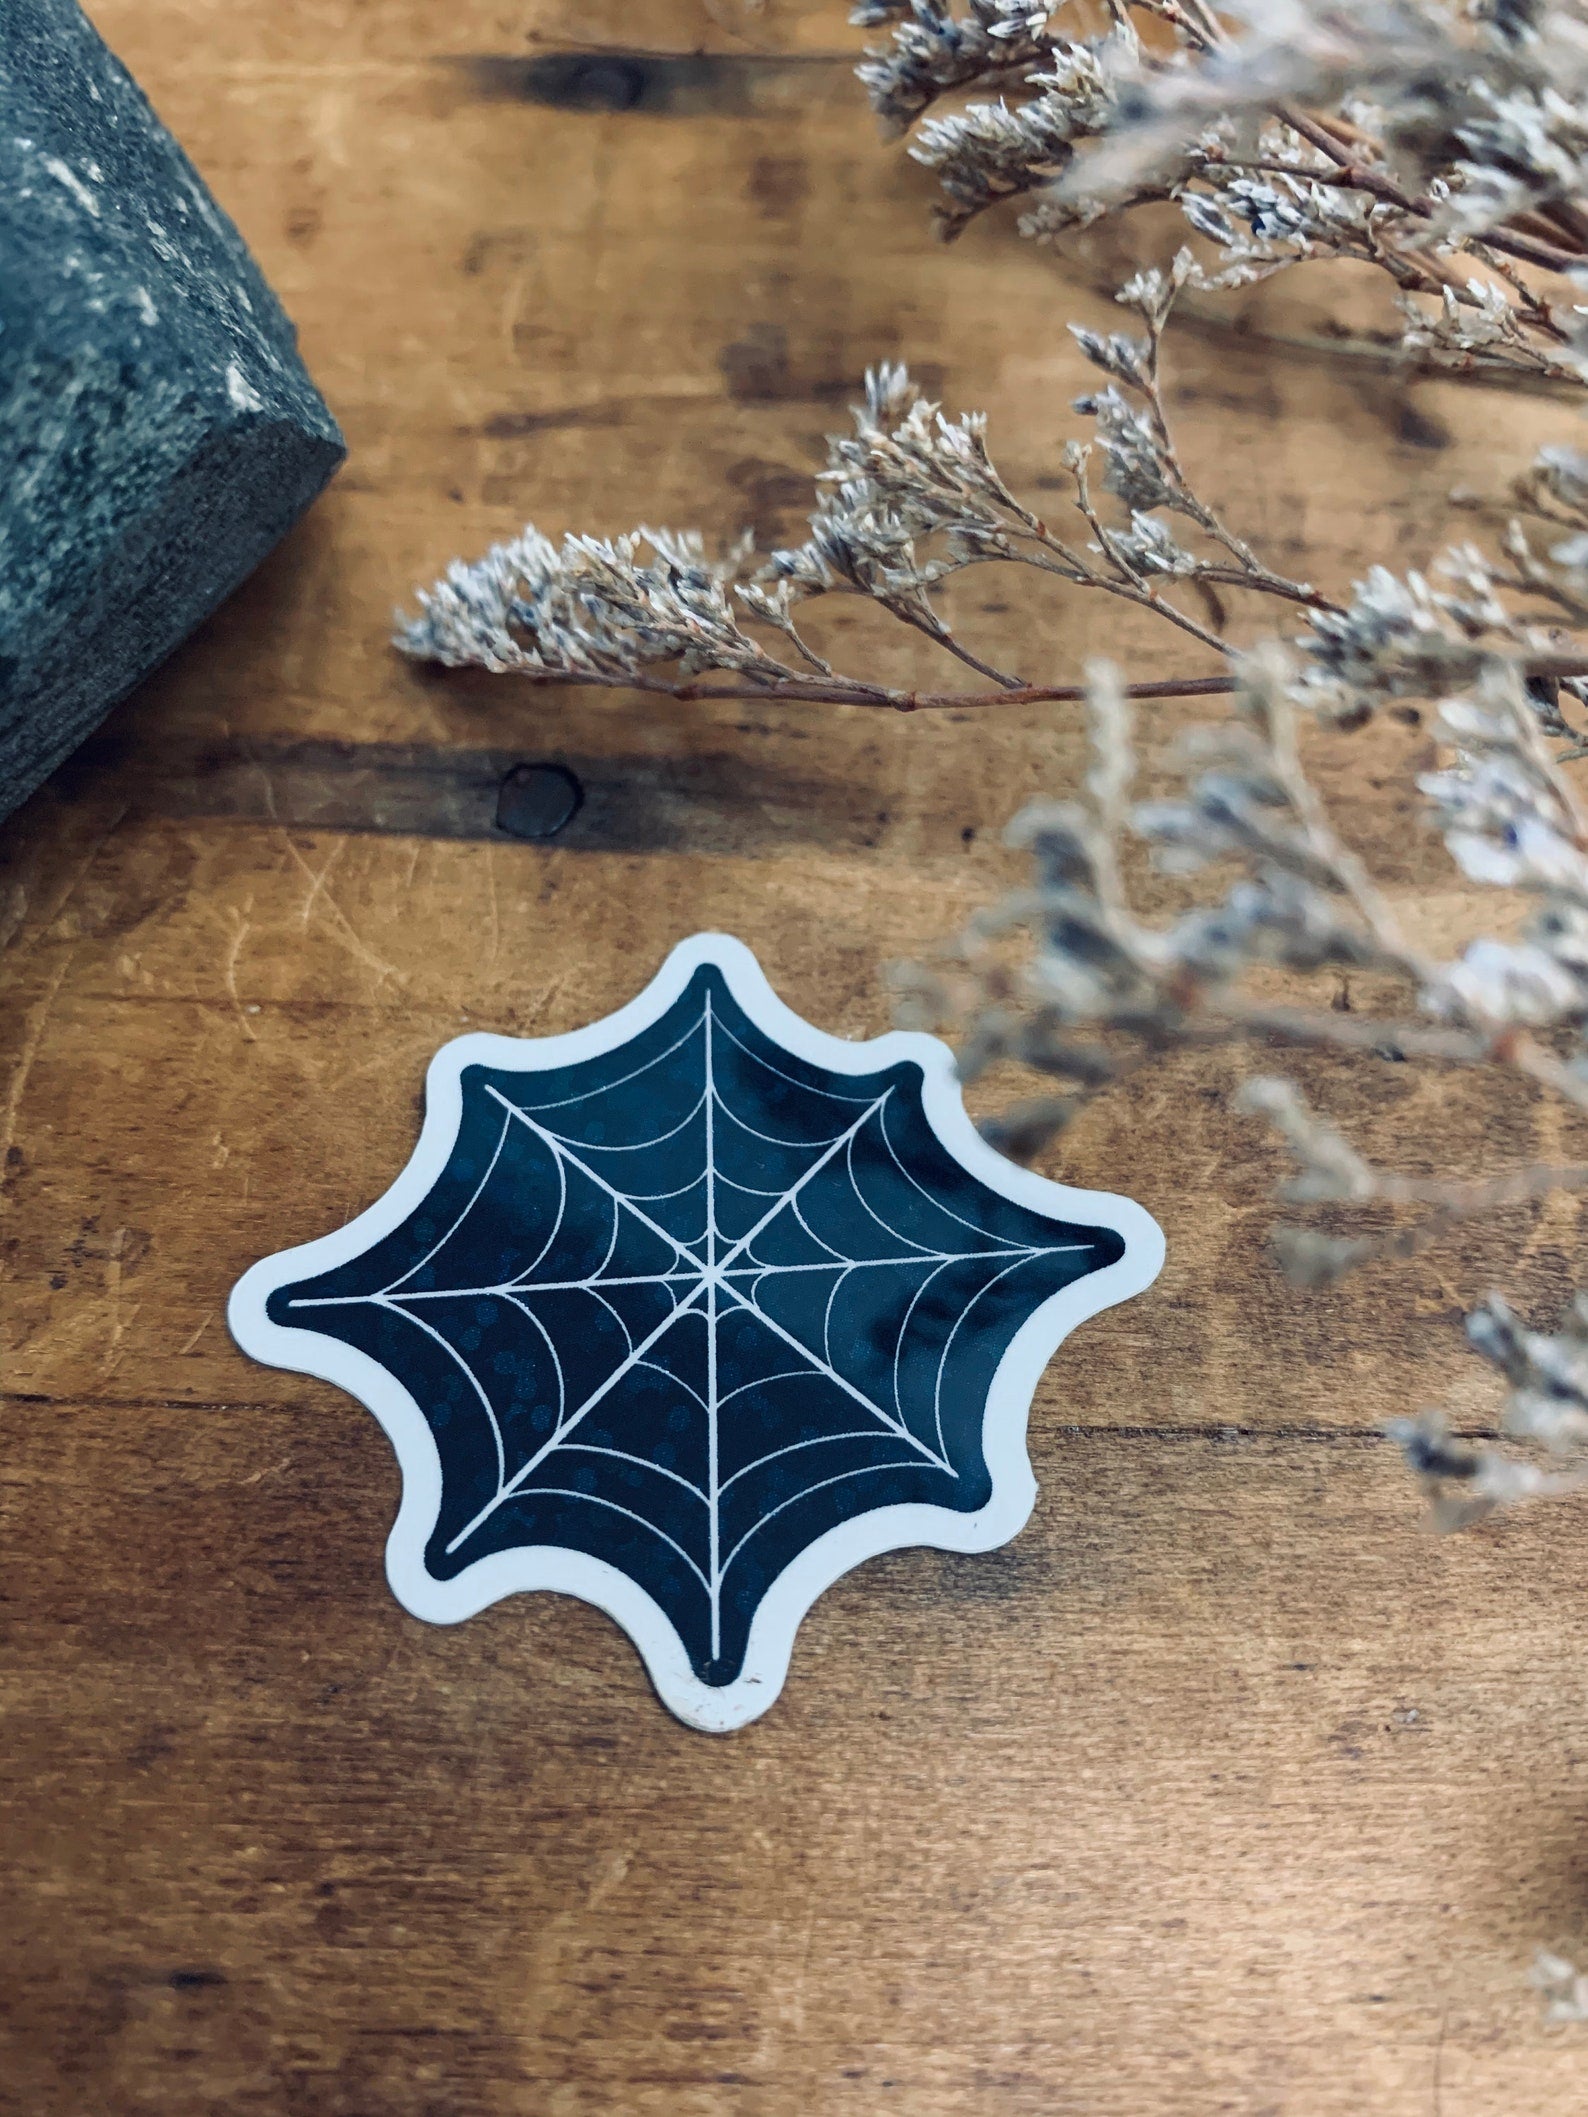 Spider Web Glitter Sticker handmade by The Stone Maidens